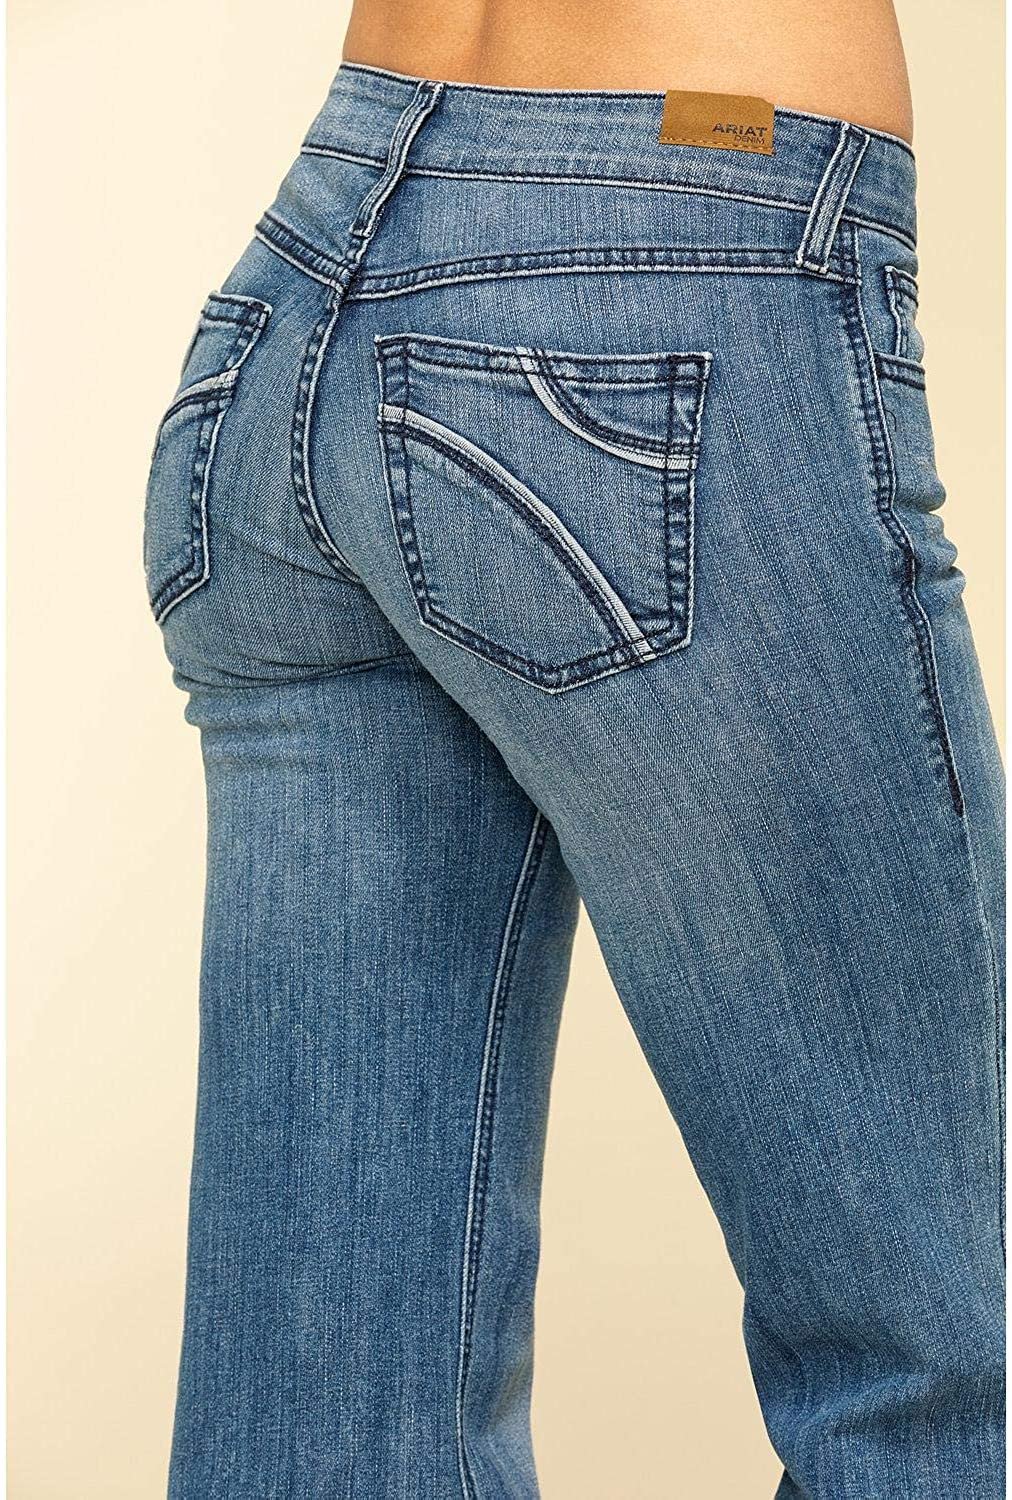 savanna moon jeans